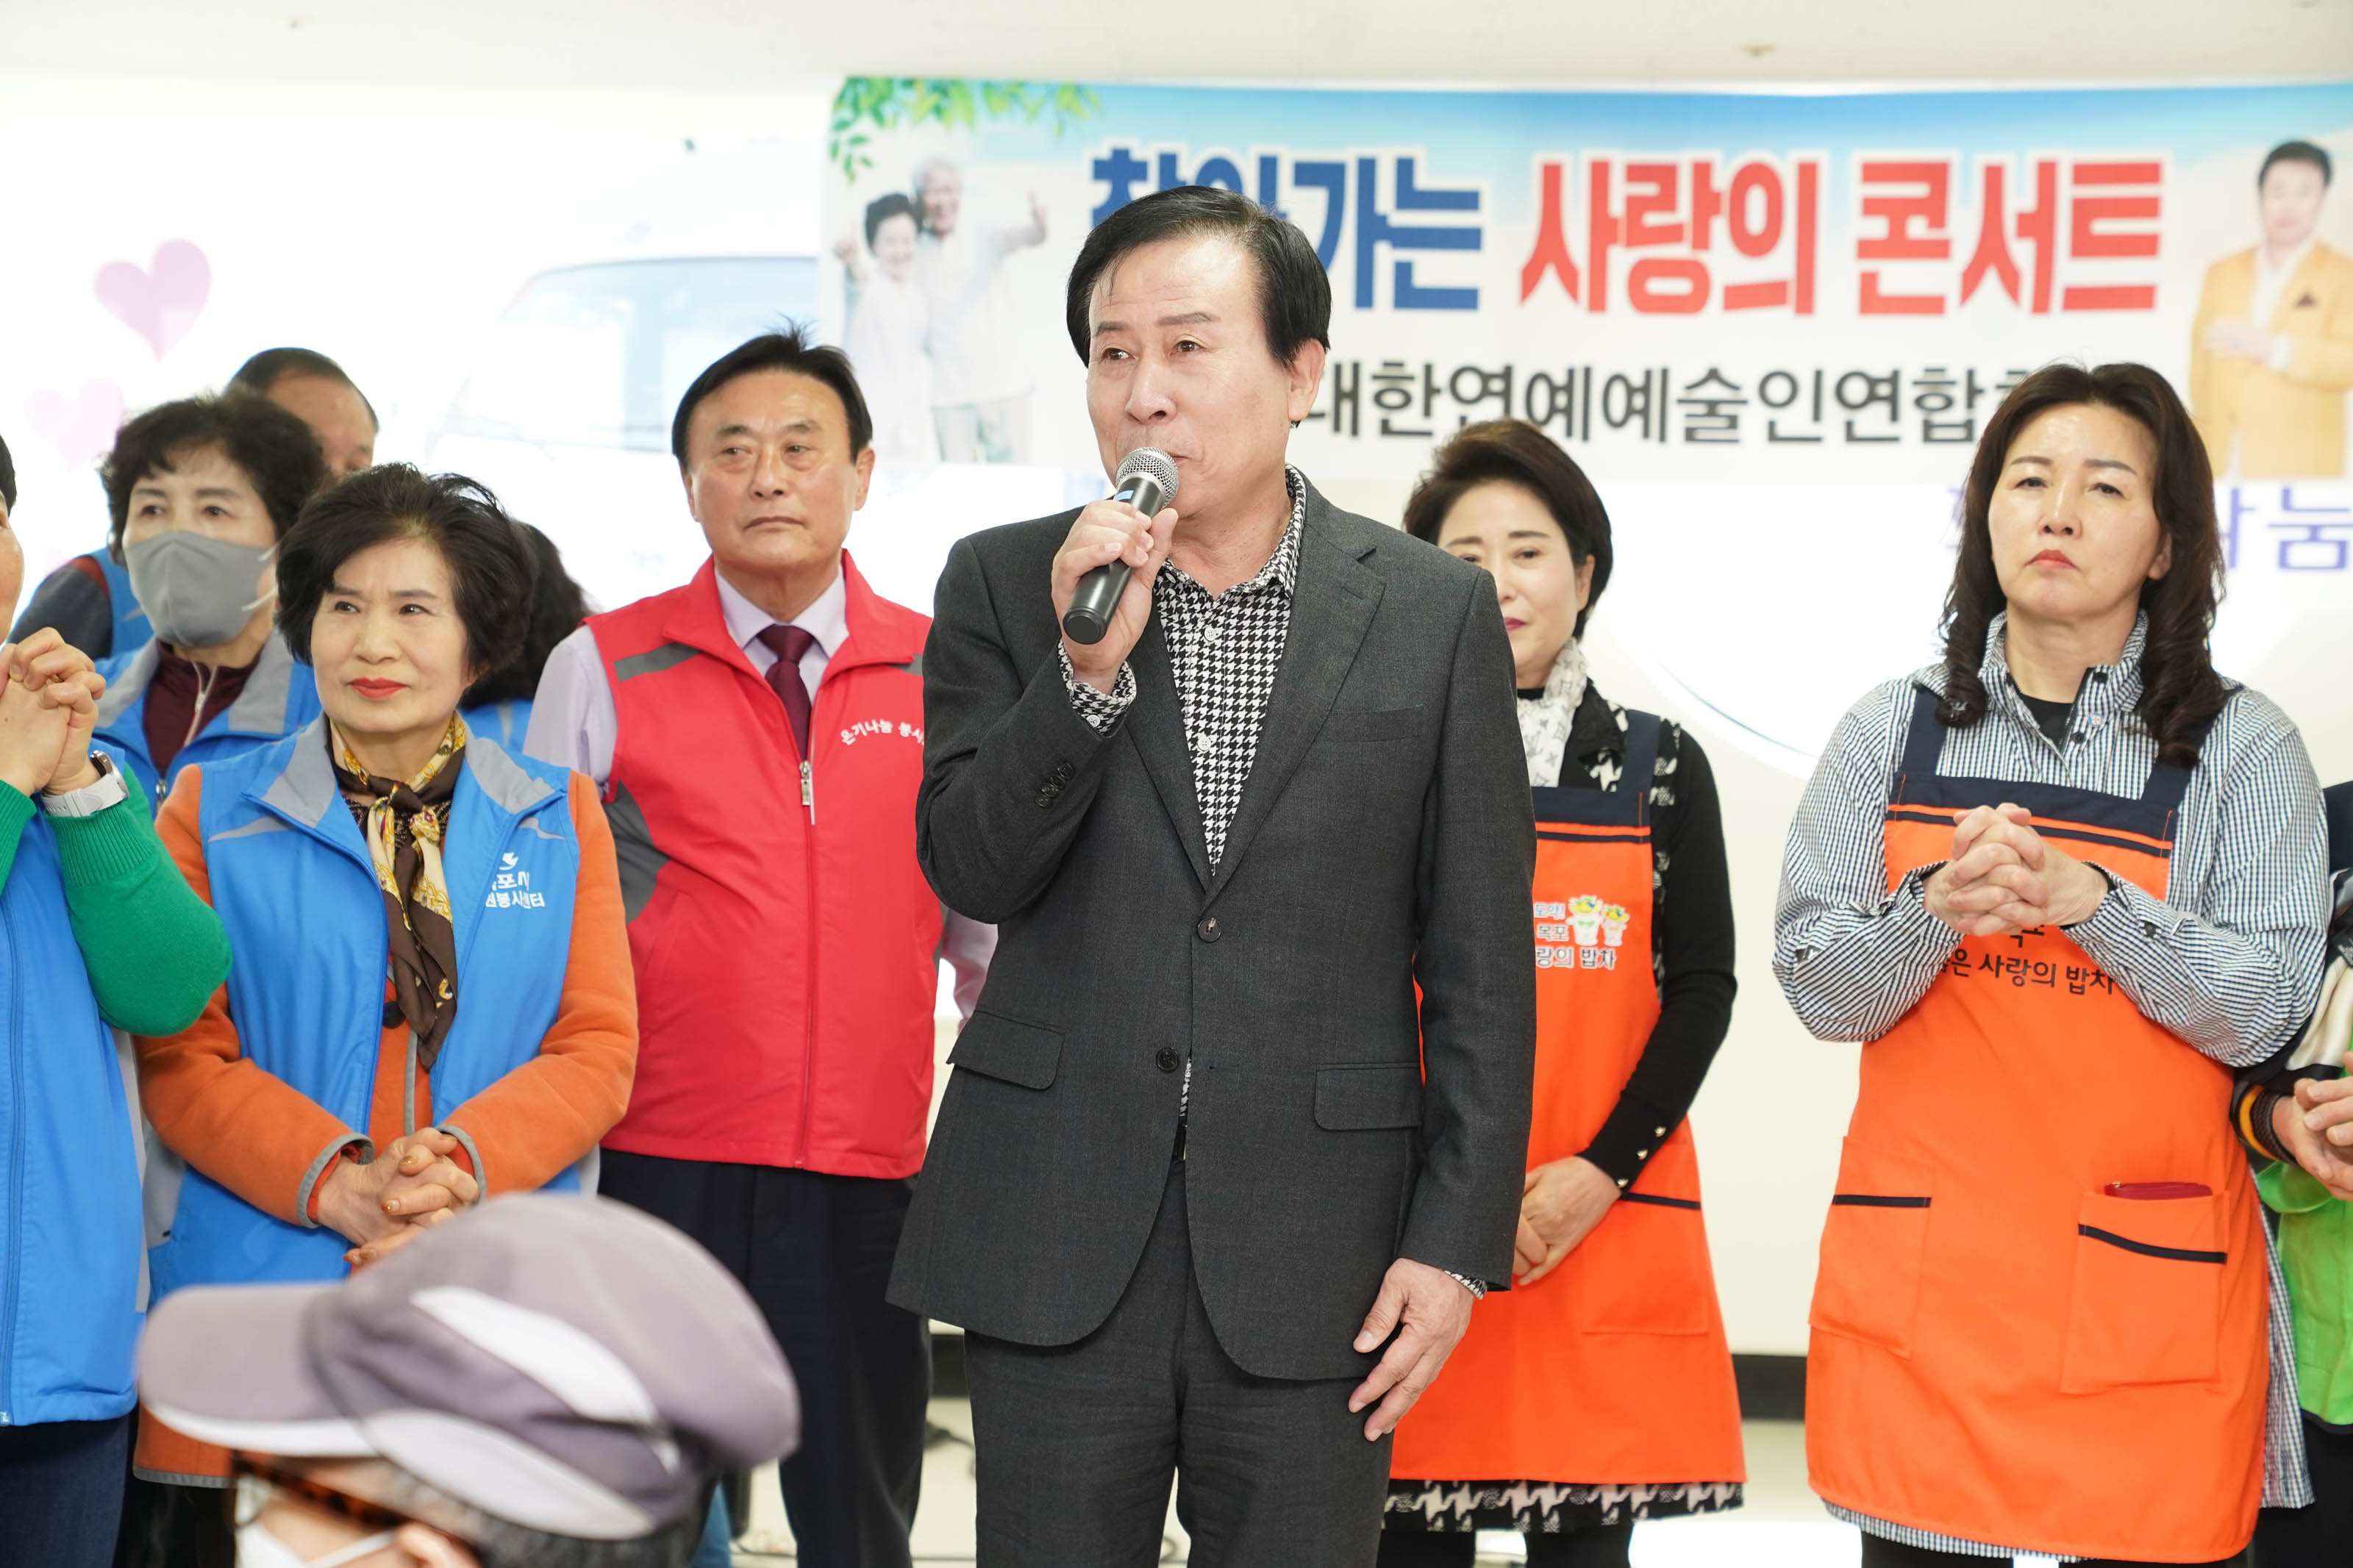 마이크를 쥐고 얘기하고 있는 박홍률 시장 뒤로 빨강, 파랑의 봉사 유니폼을 입은 5여명의 사람들과 주황색의 밥차 앞치마를 두른 두명의 여성이 서있다.